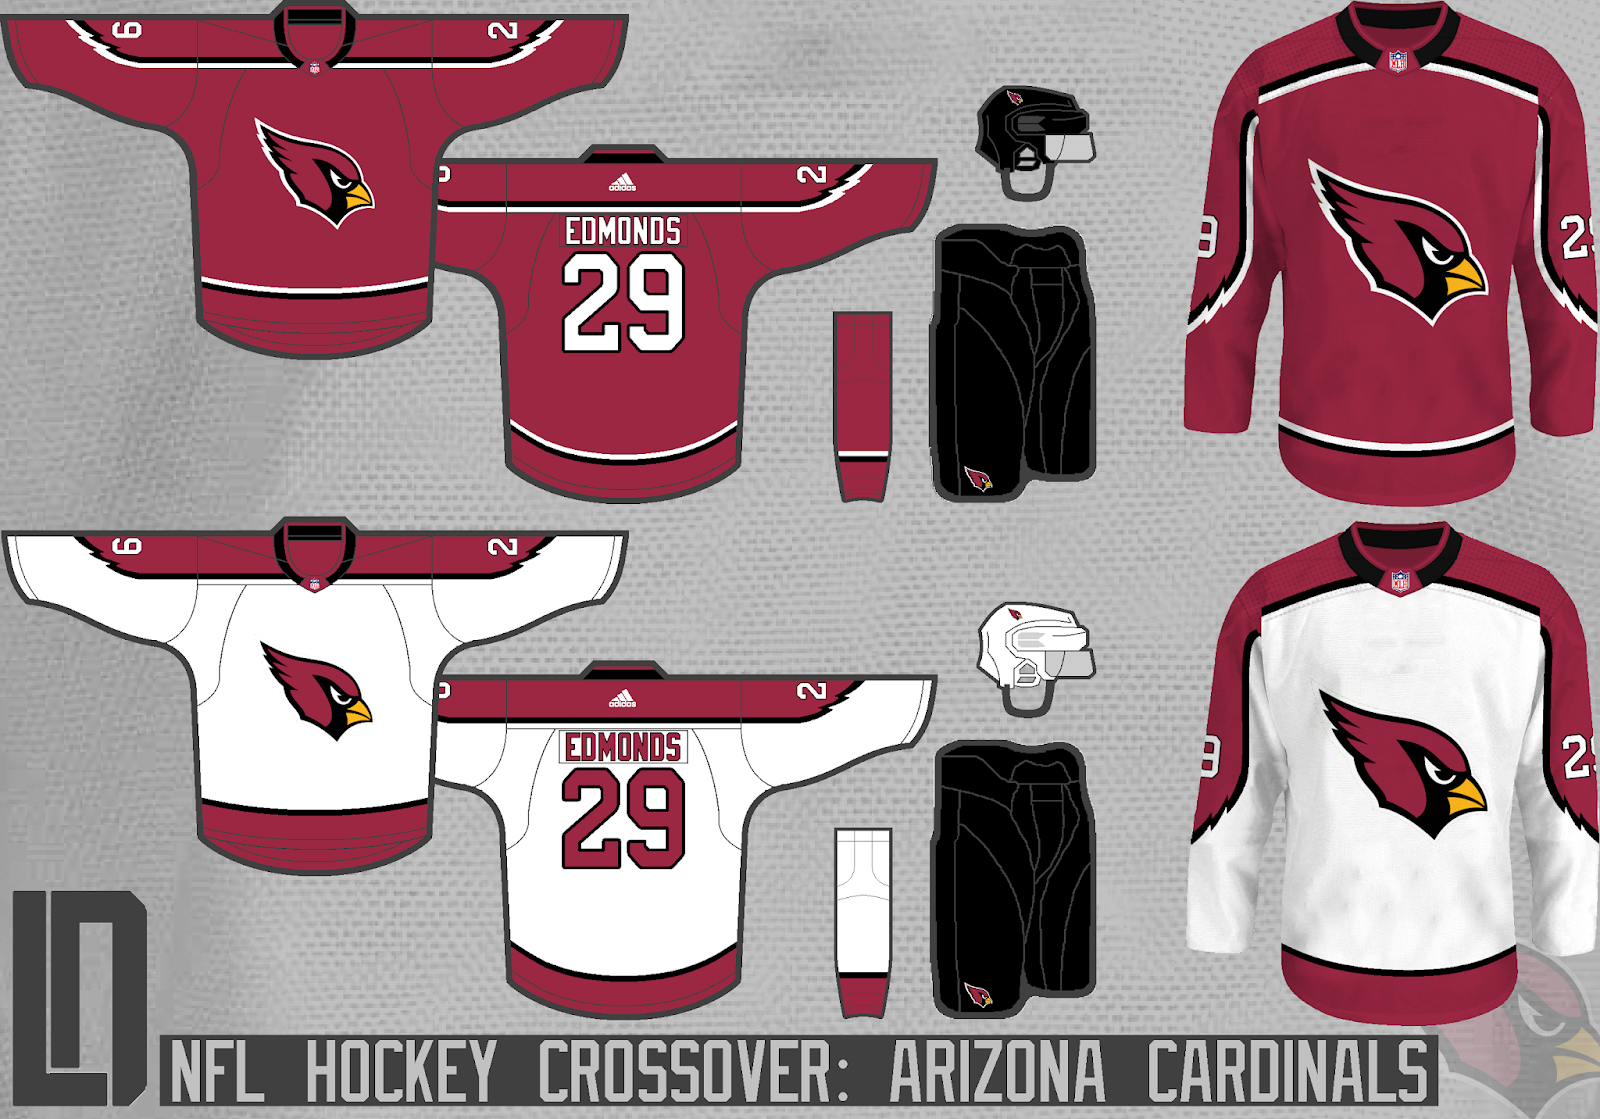 Arizona+Cardinals+Concept.png